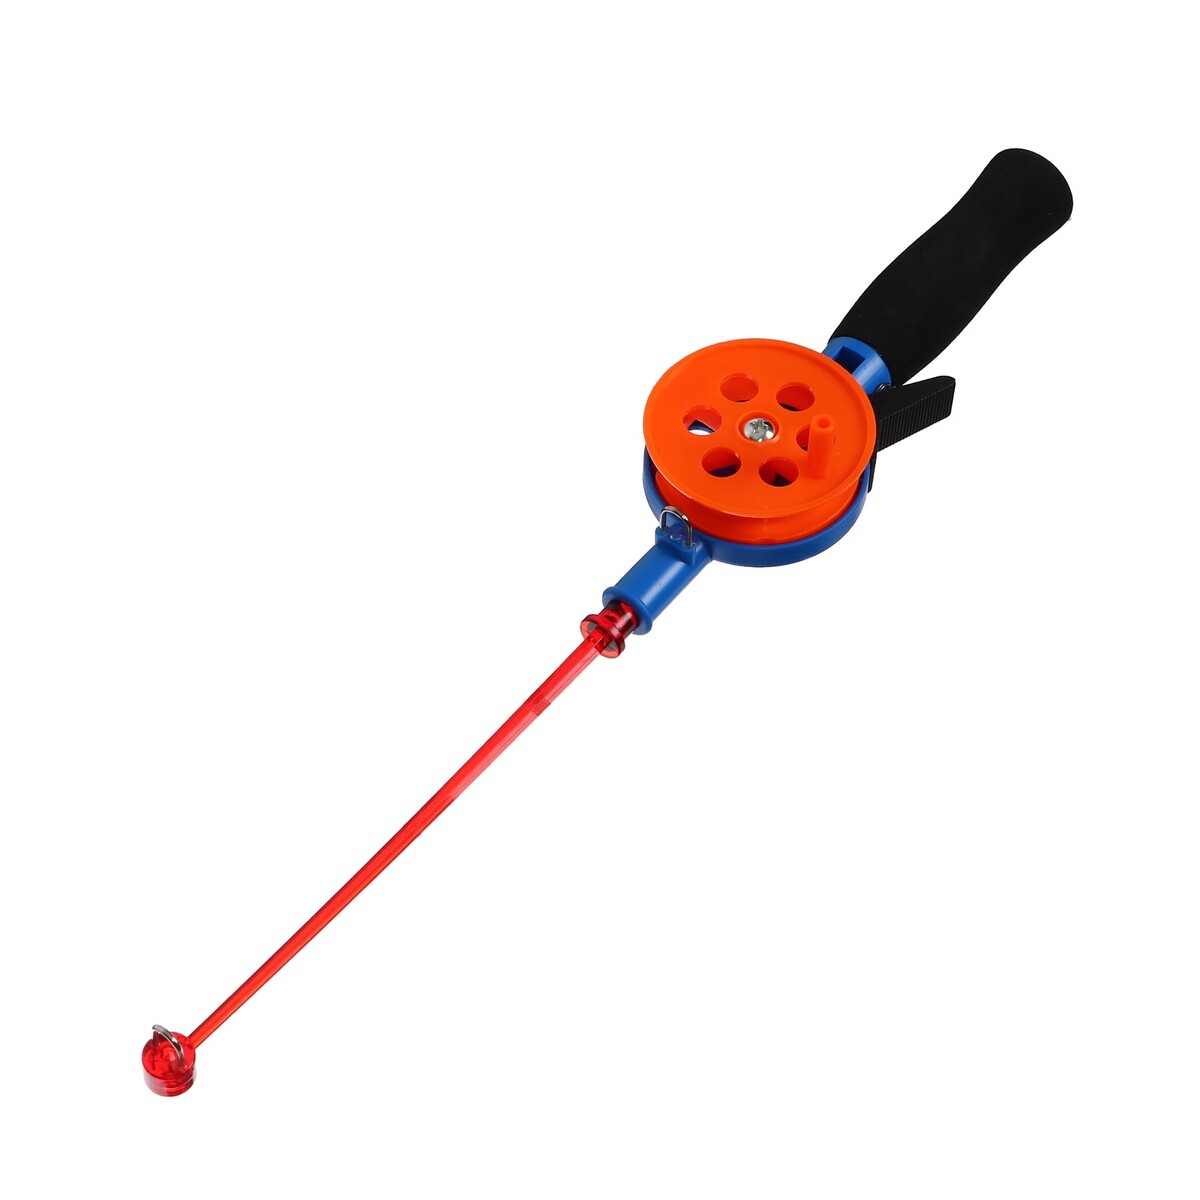 Удочка зимняя, ручка неопрен, длина 33 см, цвет оранжевый, hfb-34 удочка зимняя ручка неопрен hfb 4